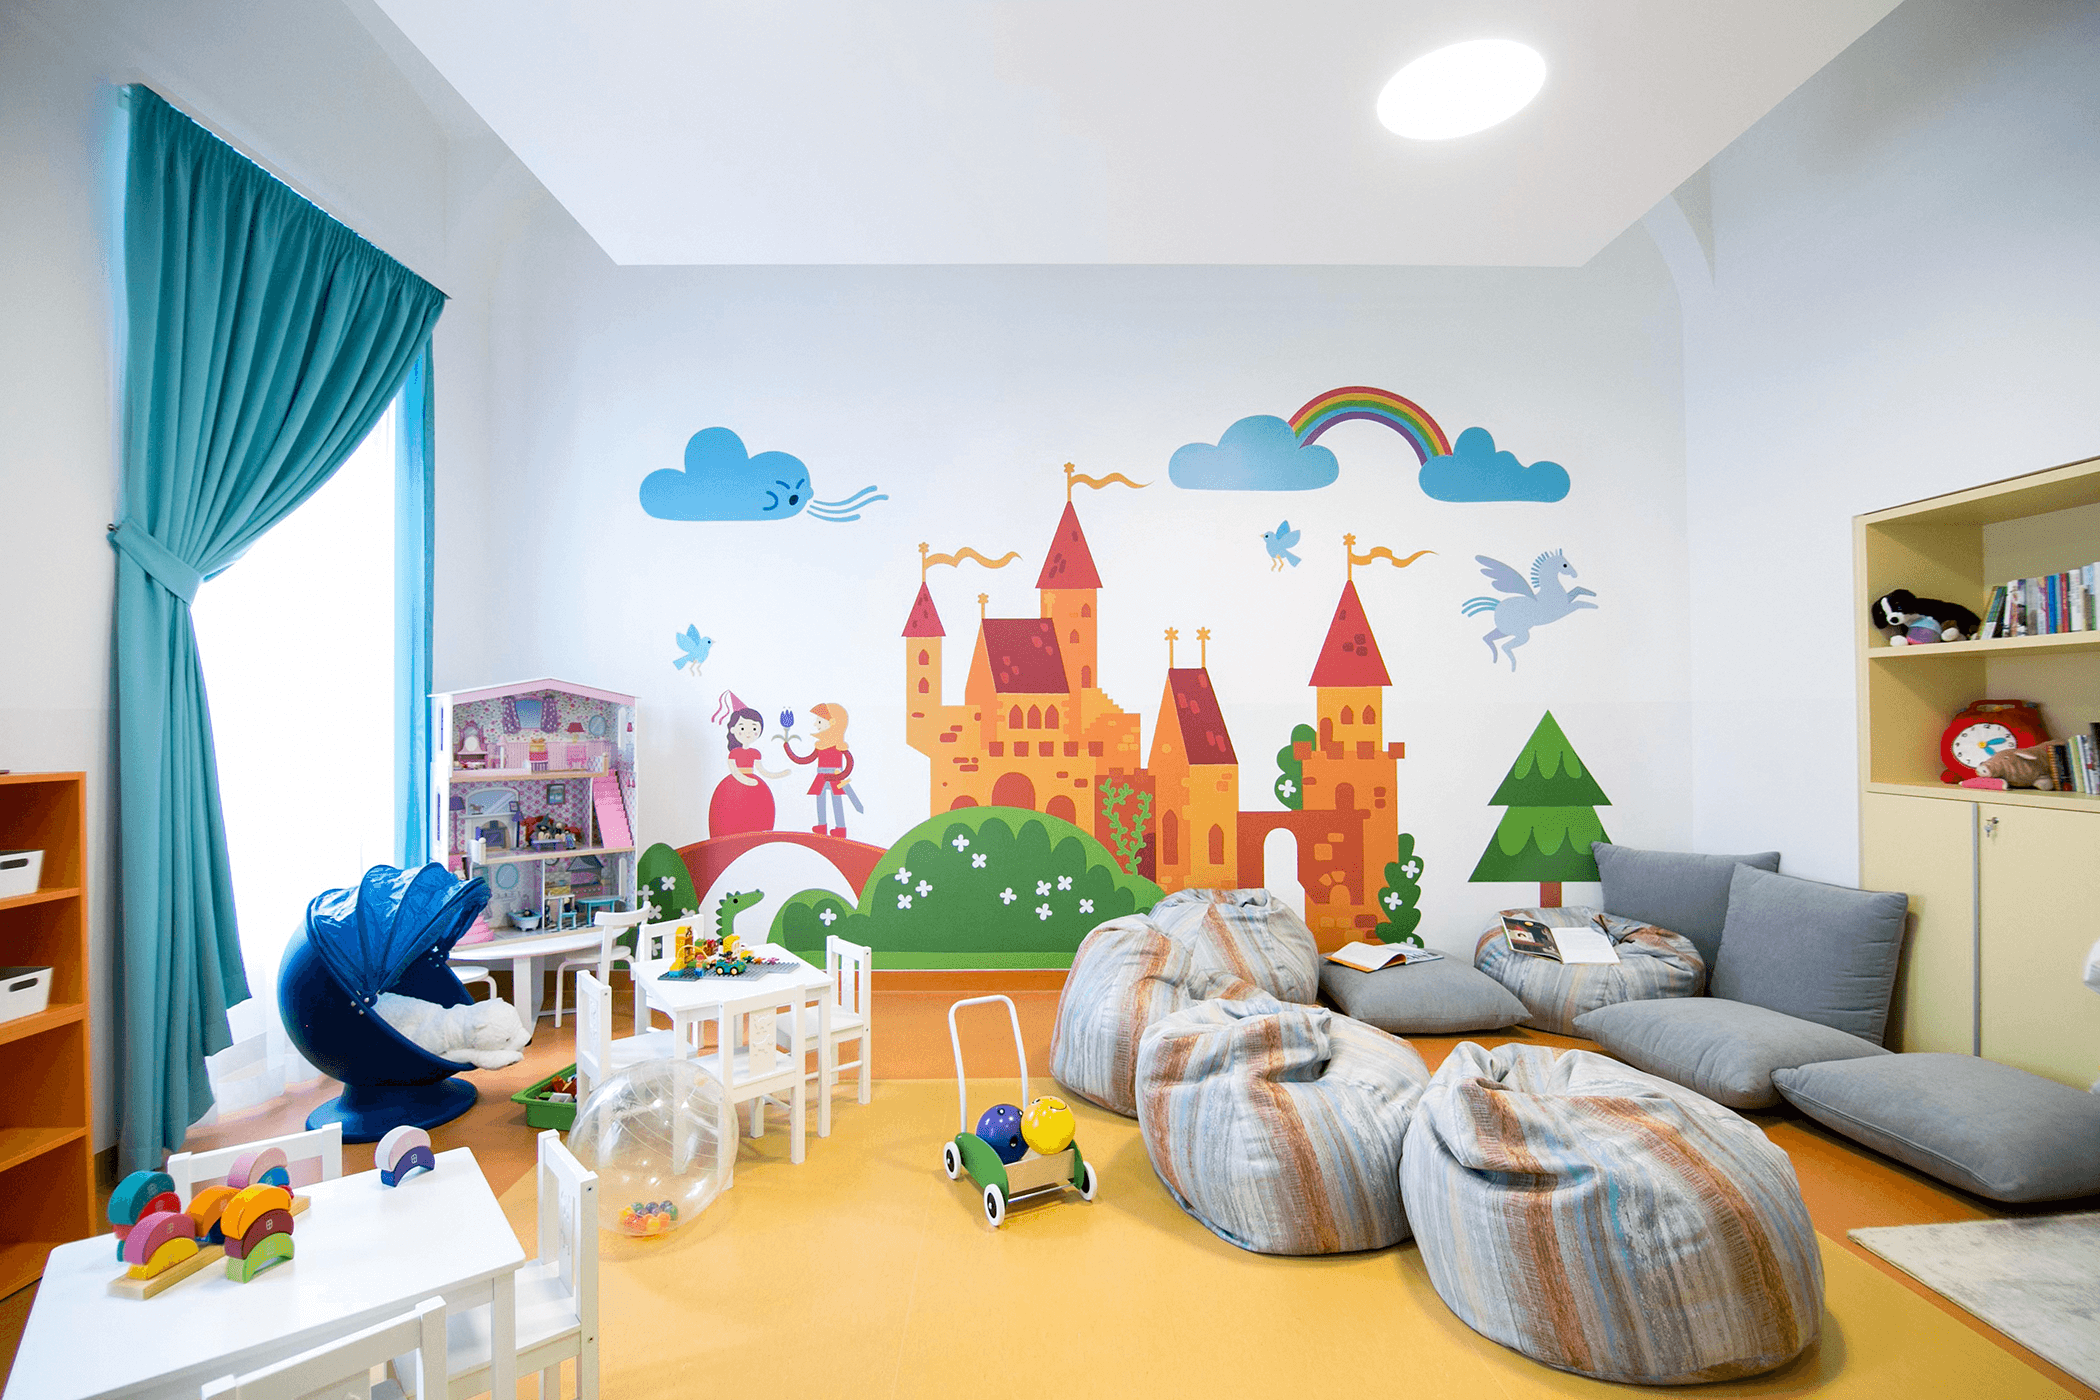 Wall decor - fairytale castle